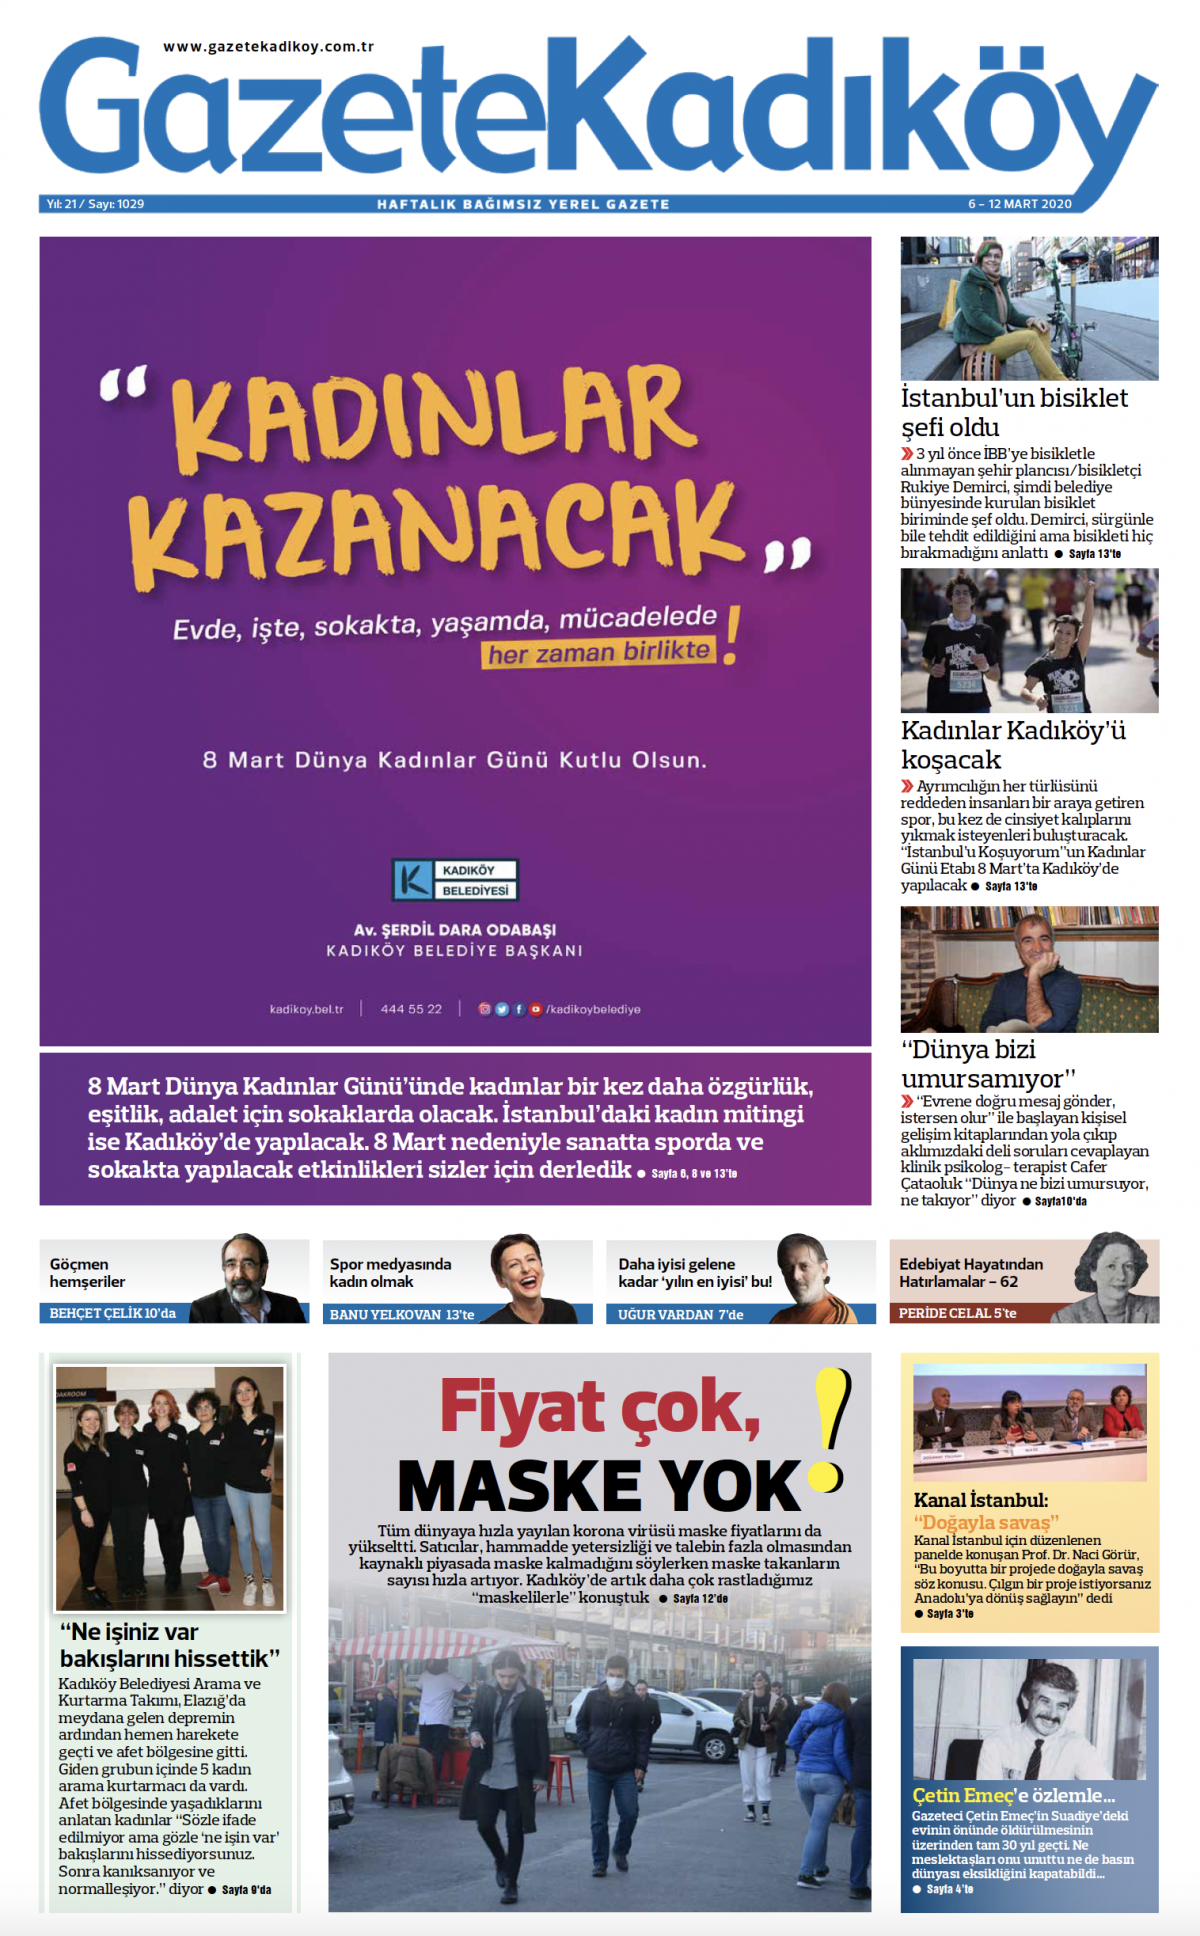 Gazete Kadıköy - 1029. Sayı